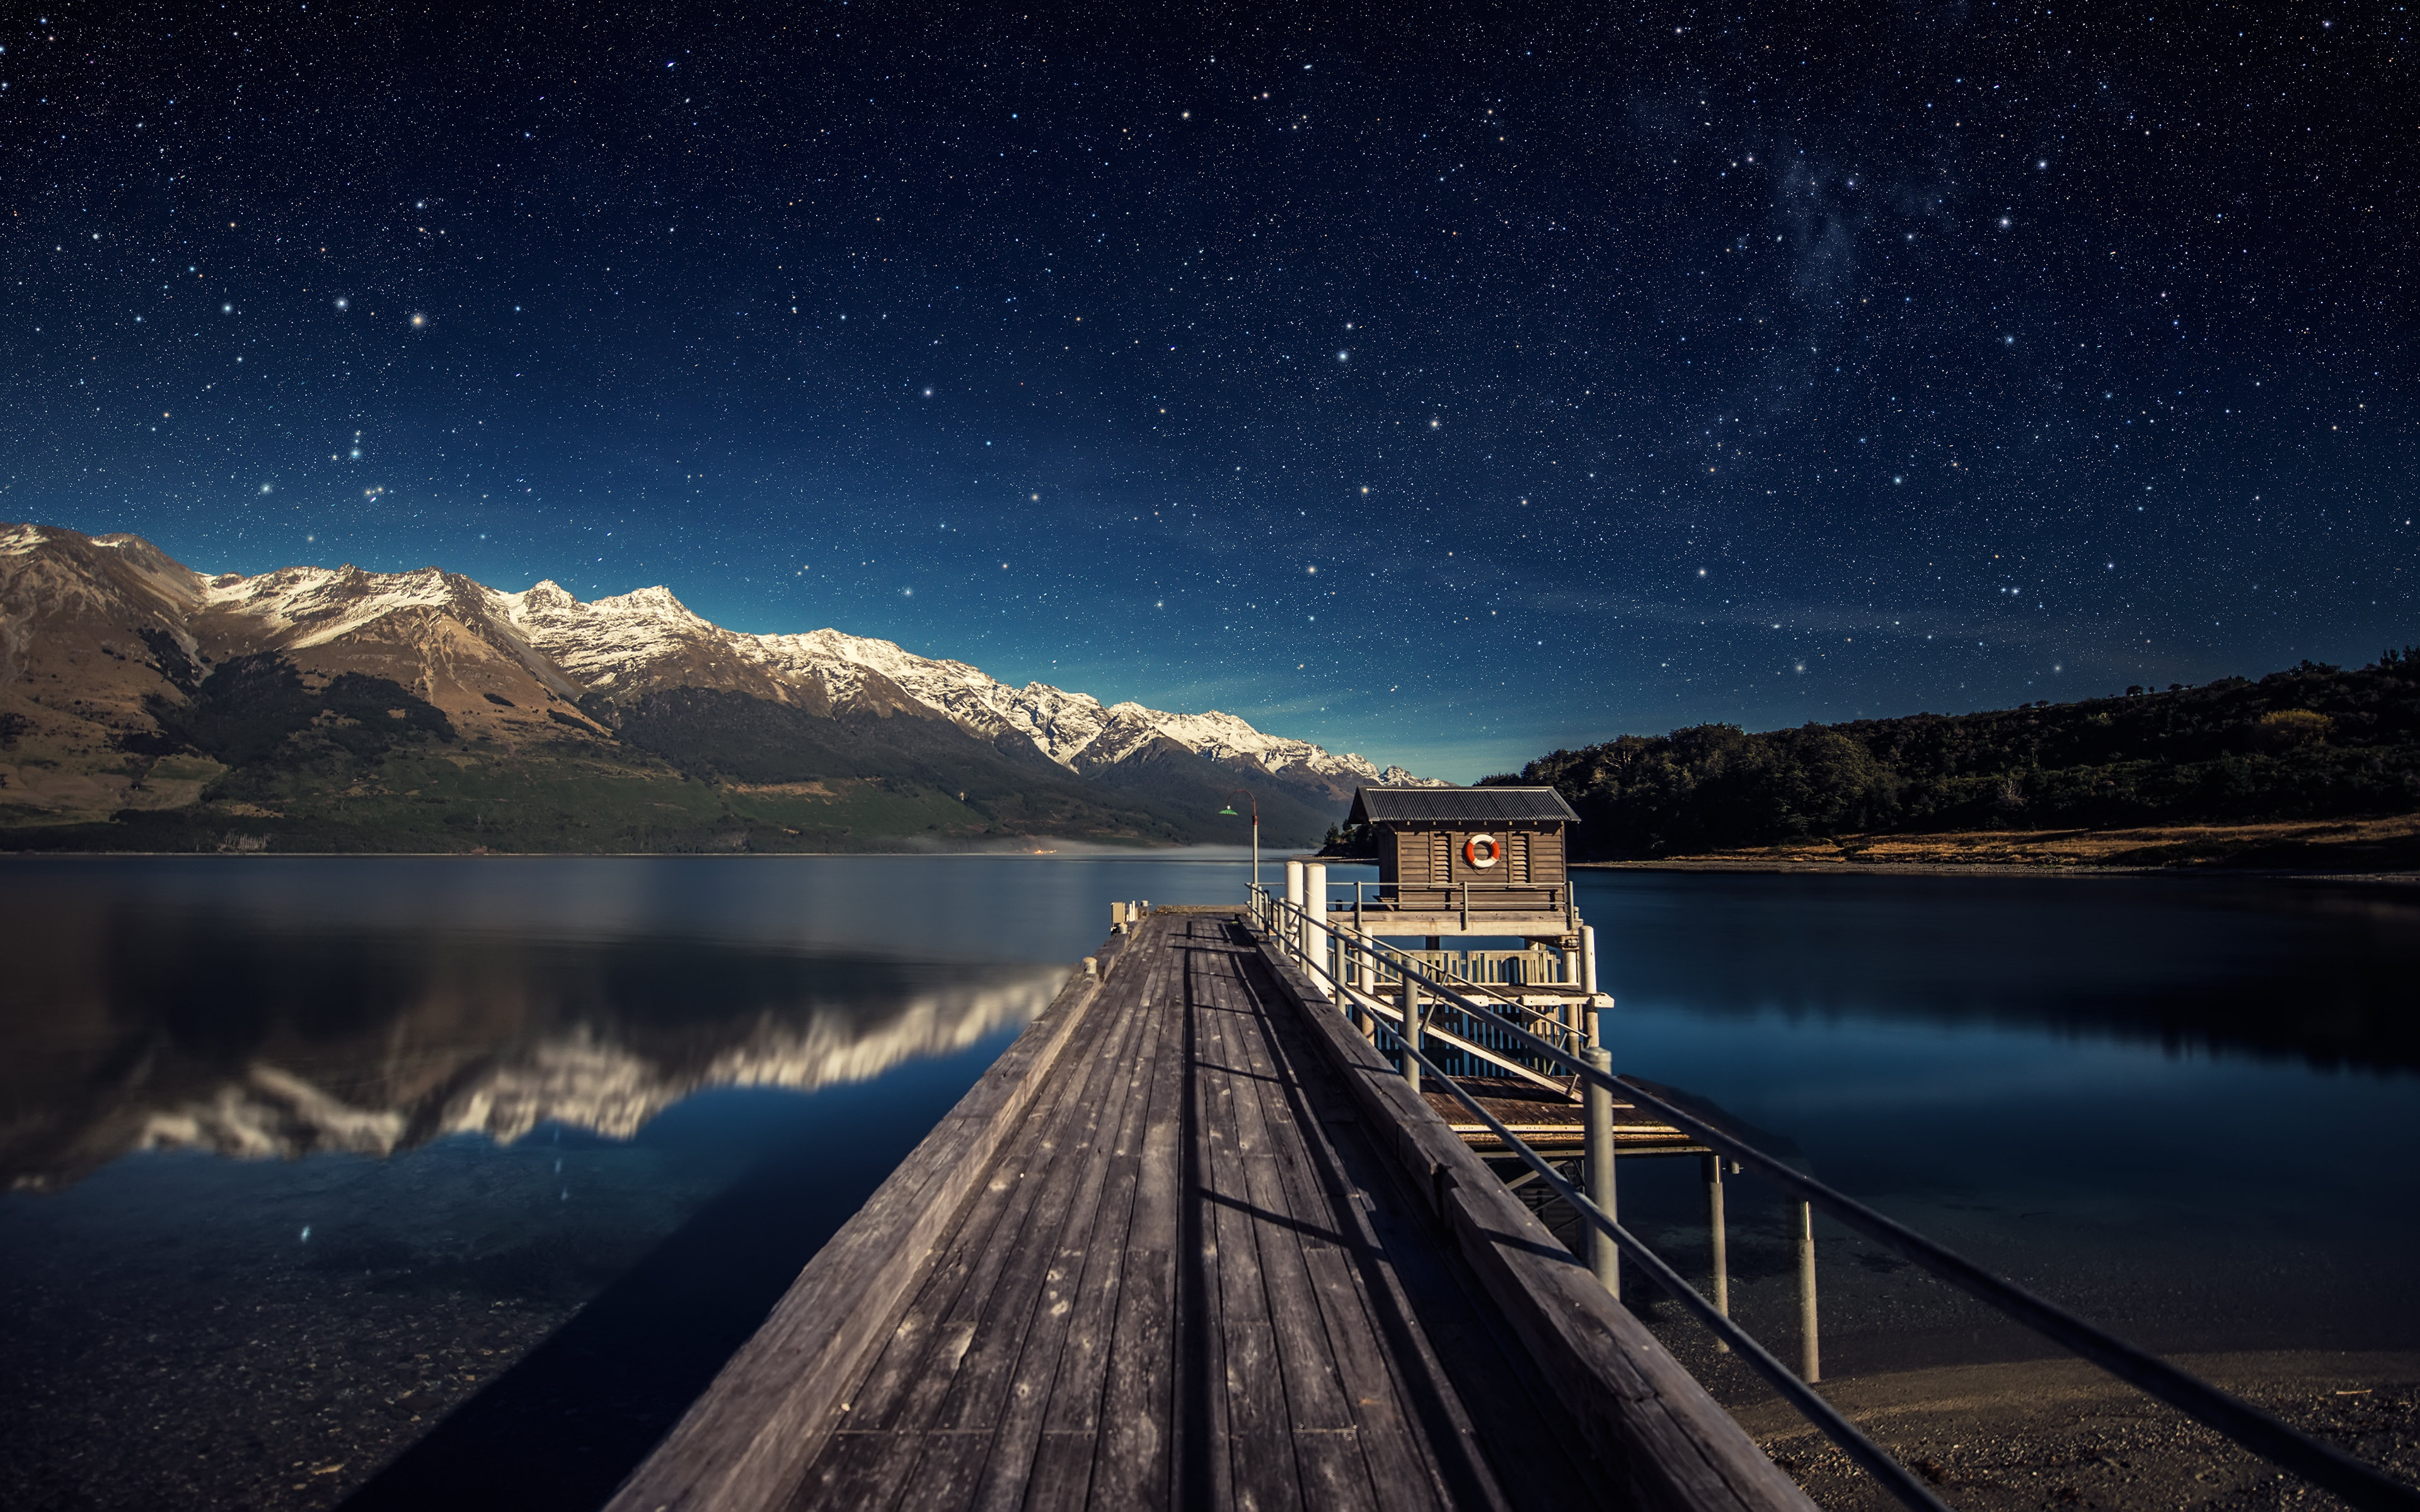 Обои на телефон с галереи. Новозеландия звезды озеро. Ночной пейзаж. Красивые обои на рабочий столэ. Горы озеро ночь.